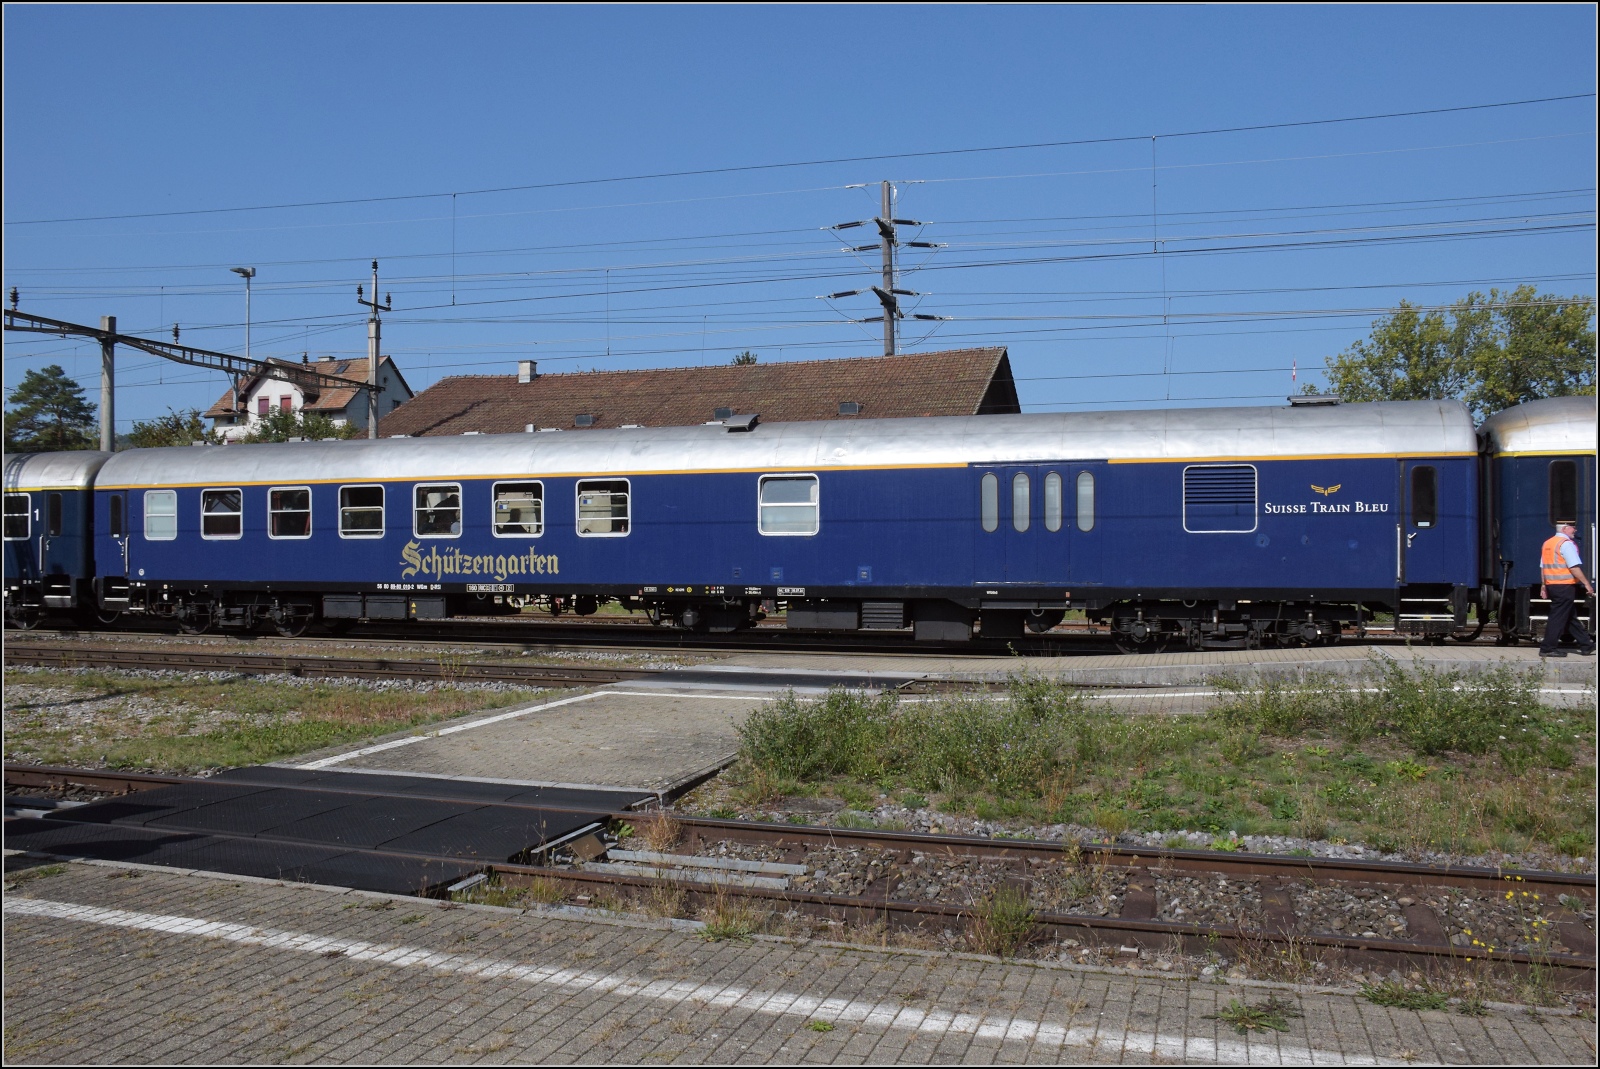 A 3/5 auf dem Schweizer Bähnle. 

Re 4/4 II 11393 brachte den Zug rückwärts in Abfahrposition. Der Swiss Train Bleu erst mal auf dem Präsentierteller. Hier der kassische Halbgepäckwagen, der zu einem Speisewagen umgebaut wurde  WGm 56 80 89-80 010-2 D-IRSI, vormals als BDm klassifiziert. Etzwilen, September 2023.